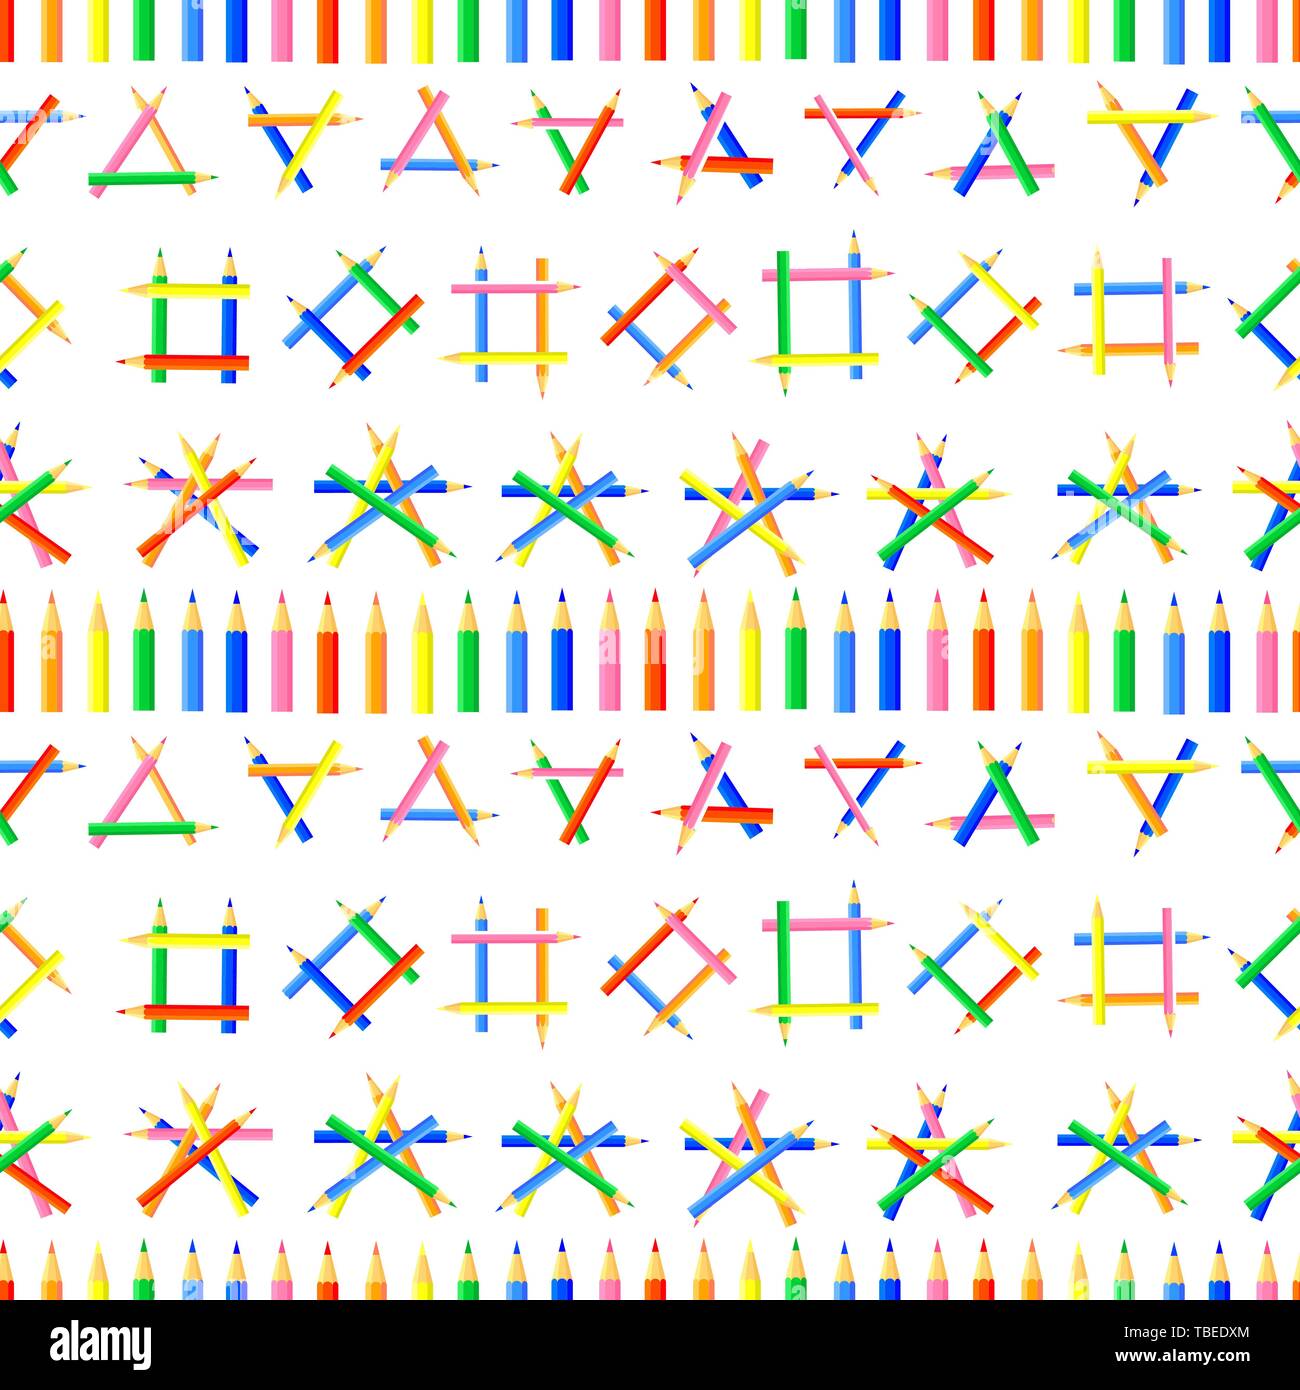 Vector seamless pattern. Una fila di matite colorate e varie forme create dalle matite appuntite. Sito di sfondo per gli artisti, tessuti, bambini. Illustrazione Vettoriale